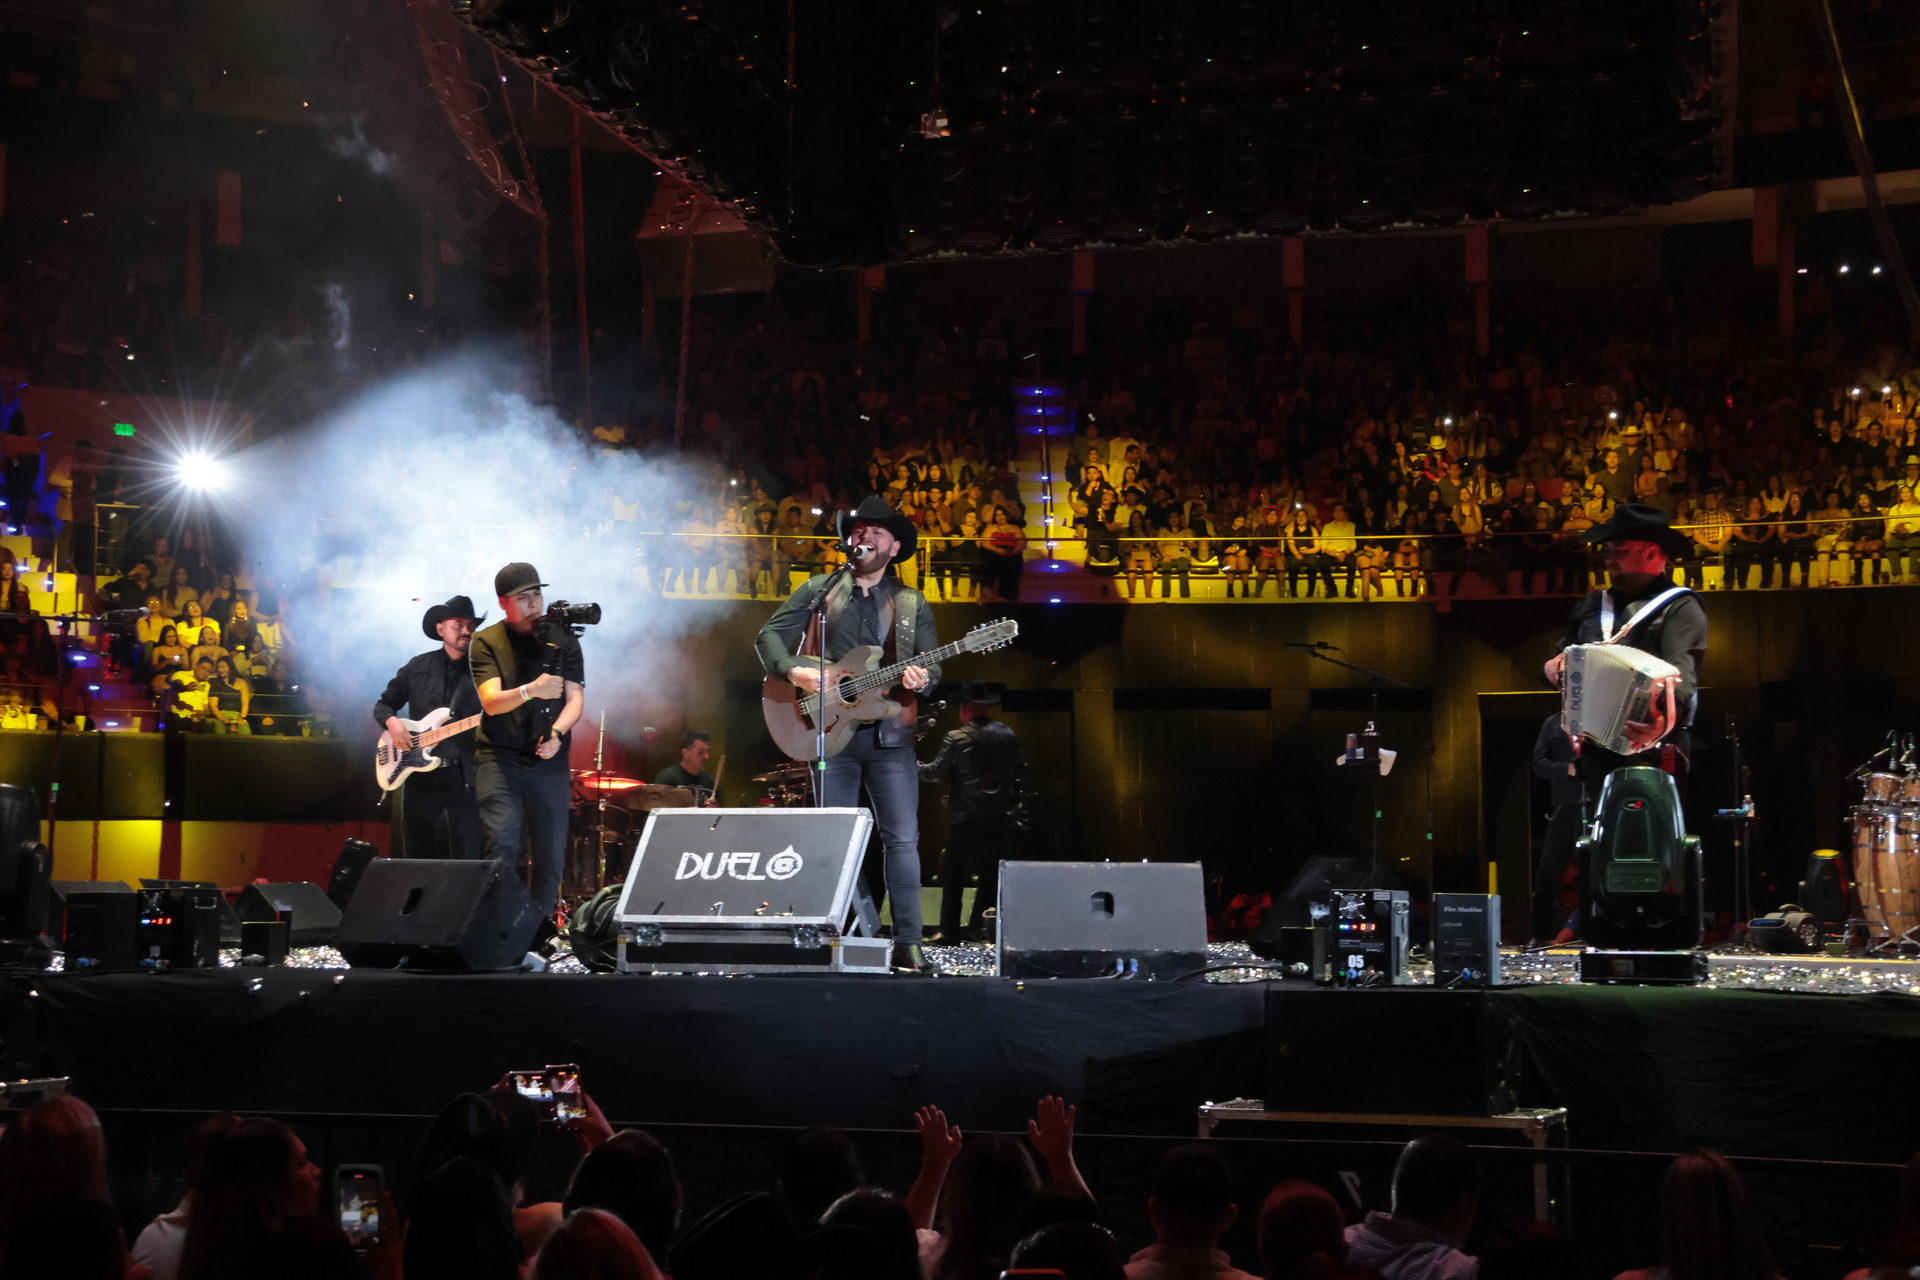 Revive aquí el concierto de Grupo Duelo en Torreón durante la noche del sábado